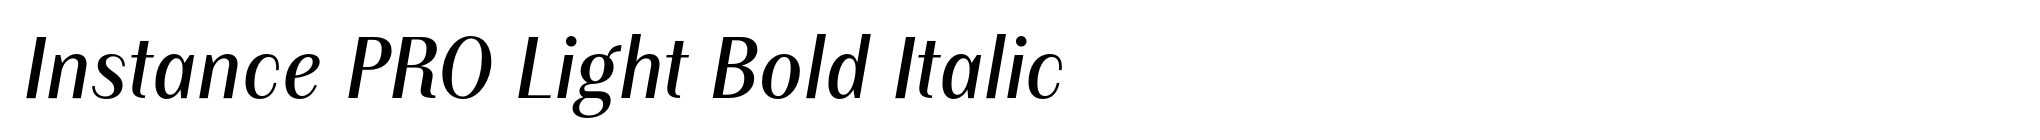 Instance PRO Light Bold Italic image